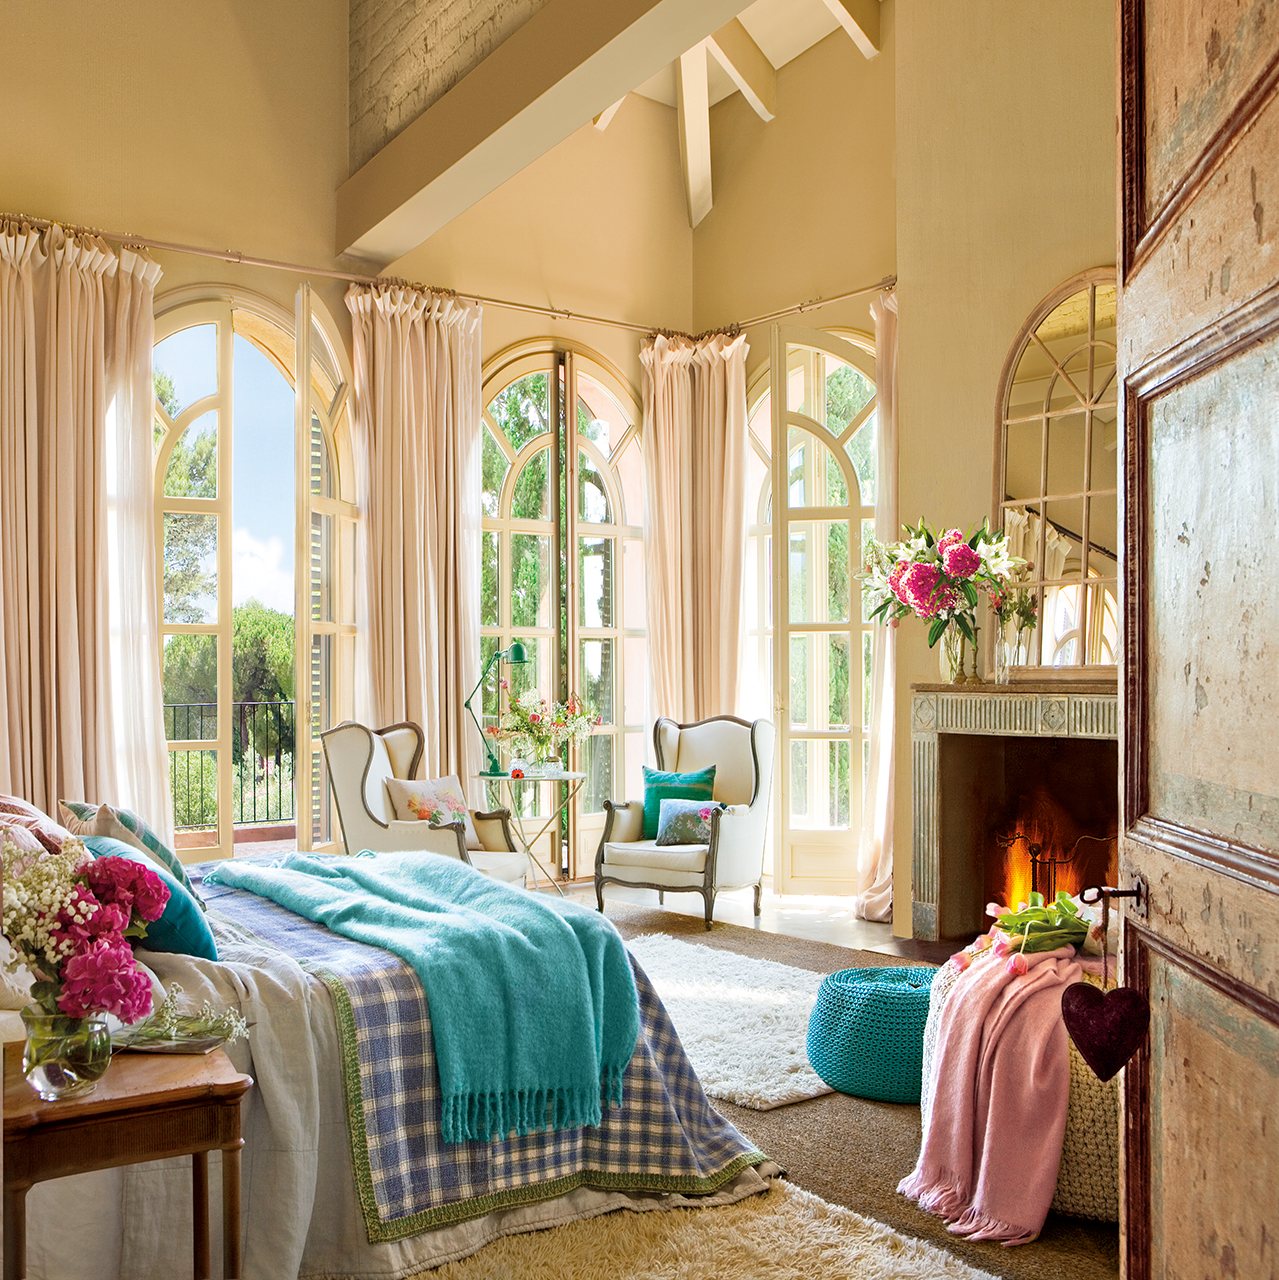 Комната красиво красивая недорого. Уютная спальня. Уютный интерьер. Романтический стиль в интерьере. Стиль Романтизм в интерьере.